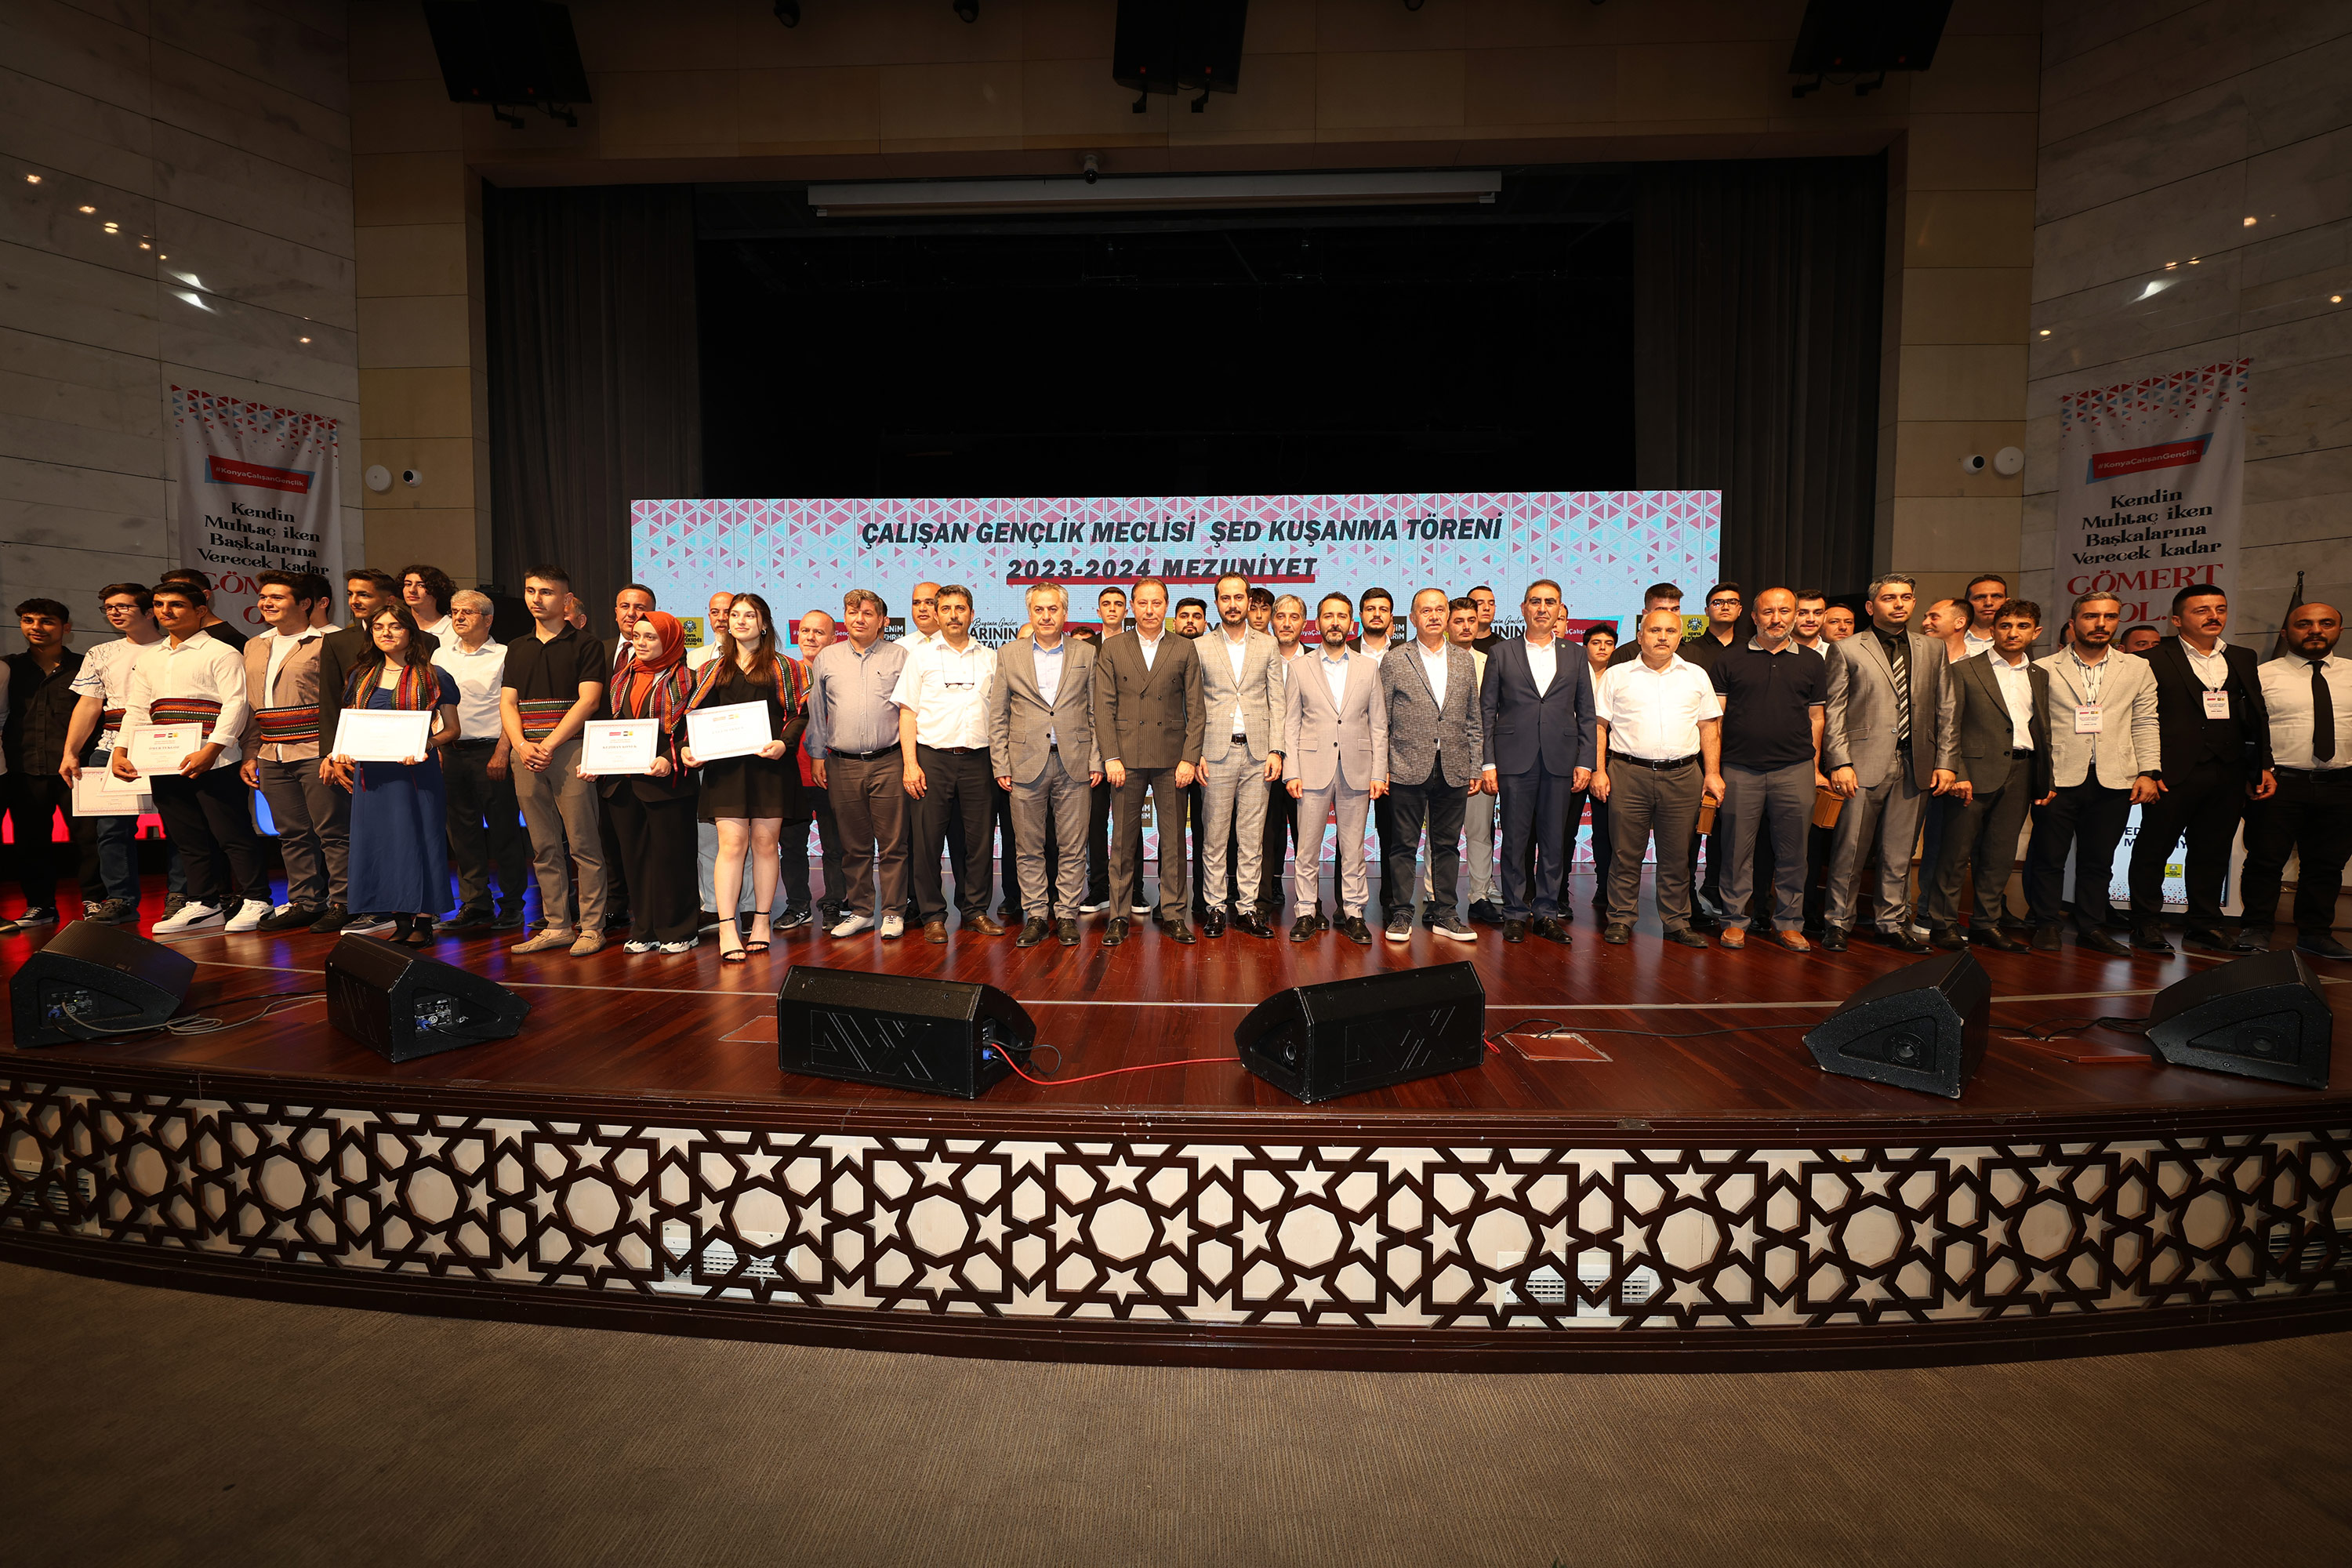 Konyalı Çalışan Gençlik Meclisi öğrencileri için şed kuşanma töreni gerçekleştirildi